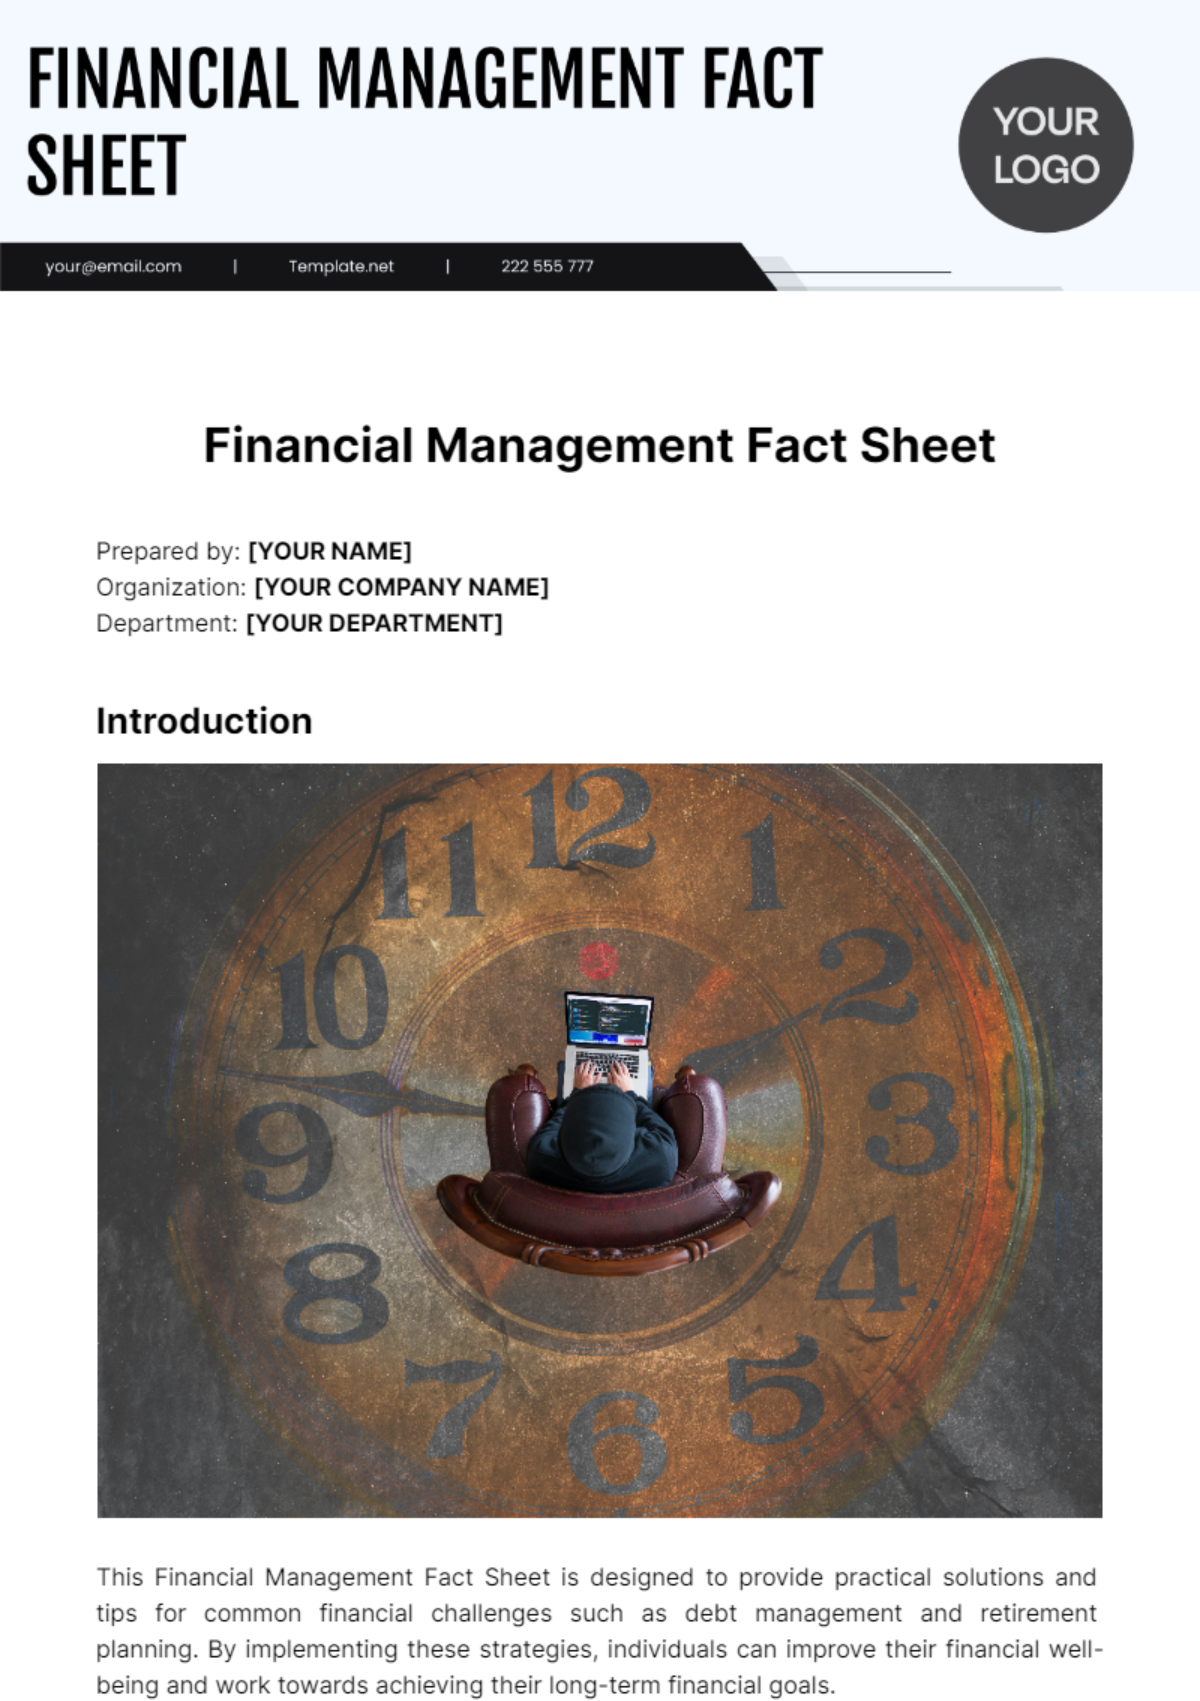 Financial Management Fact Sheet Template